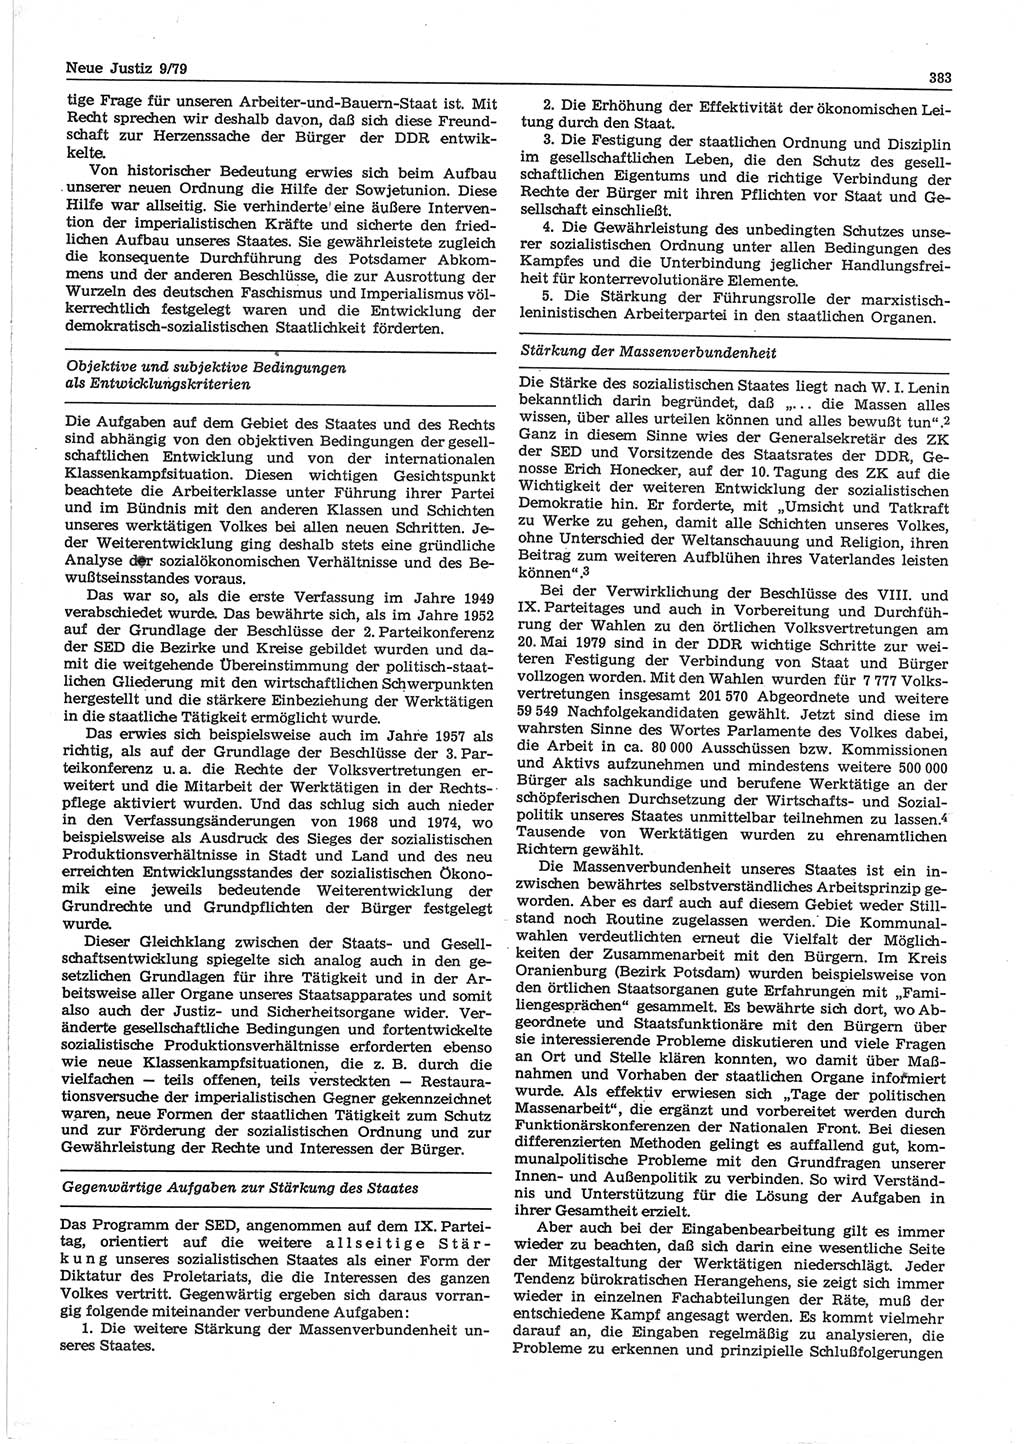 Neue Justiz (NJ), Zeitschrift für sozialistisches Recht und Gesetzlichkeit [Deutsche Demokratische Republik (DDR)], 33. Jahrgang 1979, Seite 383 (NJ DDR 1979, S. 383)